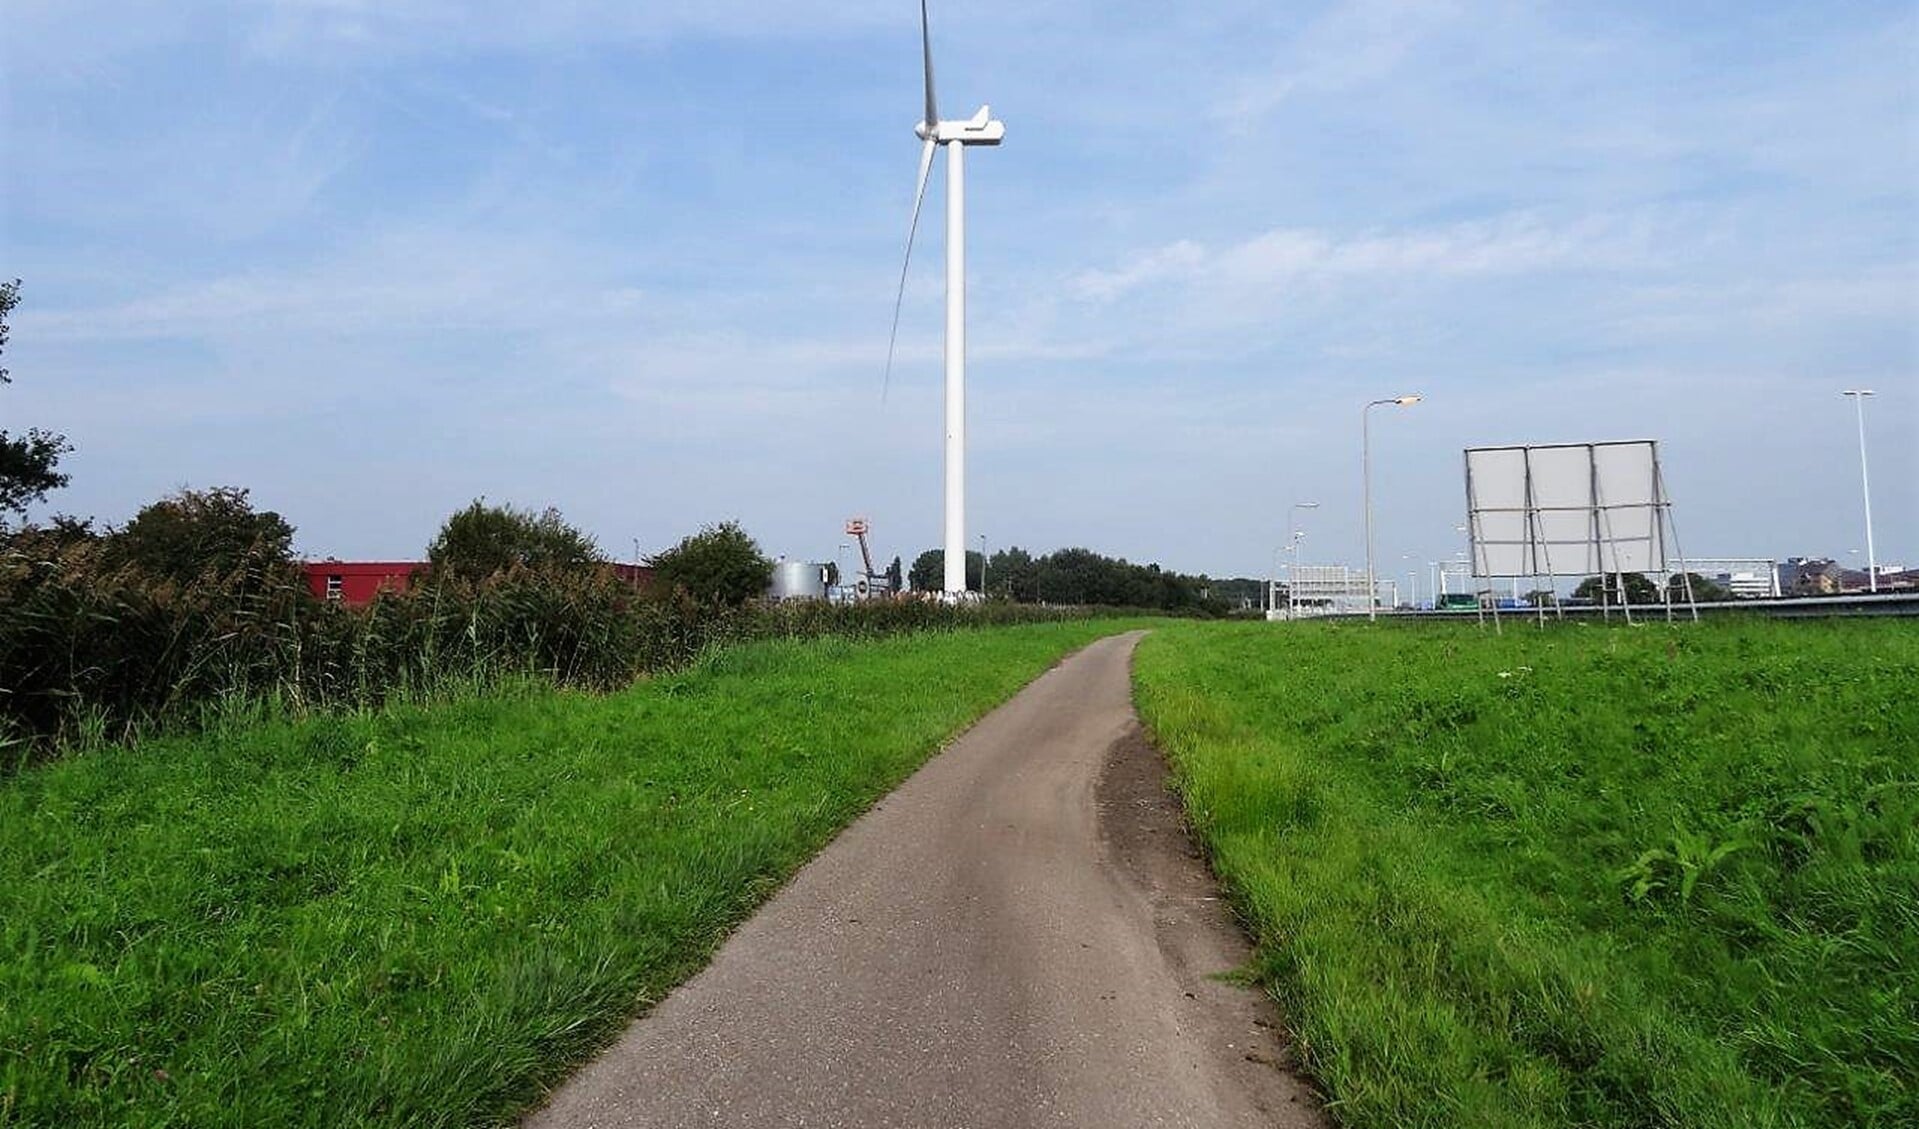 De windturbine gezien vanaf de rijksweg (foto: Ap de Heus).